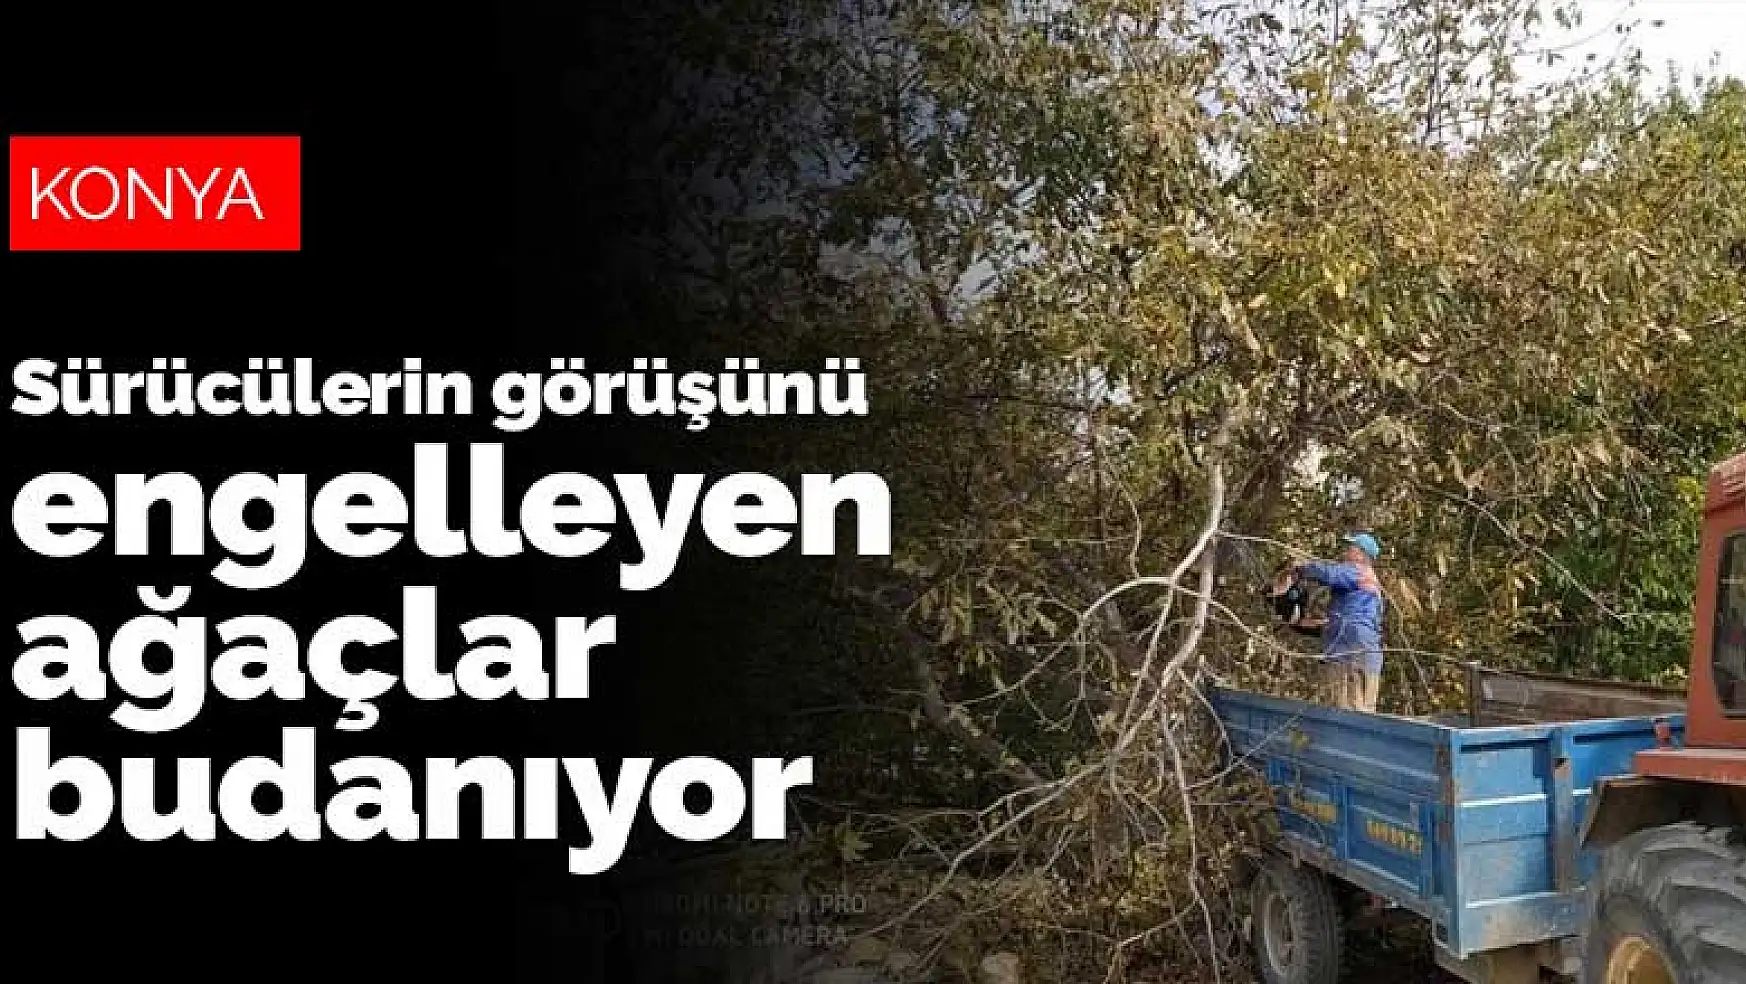 Konya'nın Hüyük ilçesinde sürücülerin görüşünü engelleyen ağaçlar budanıyor